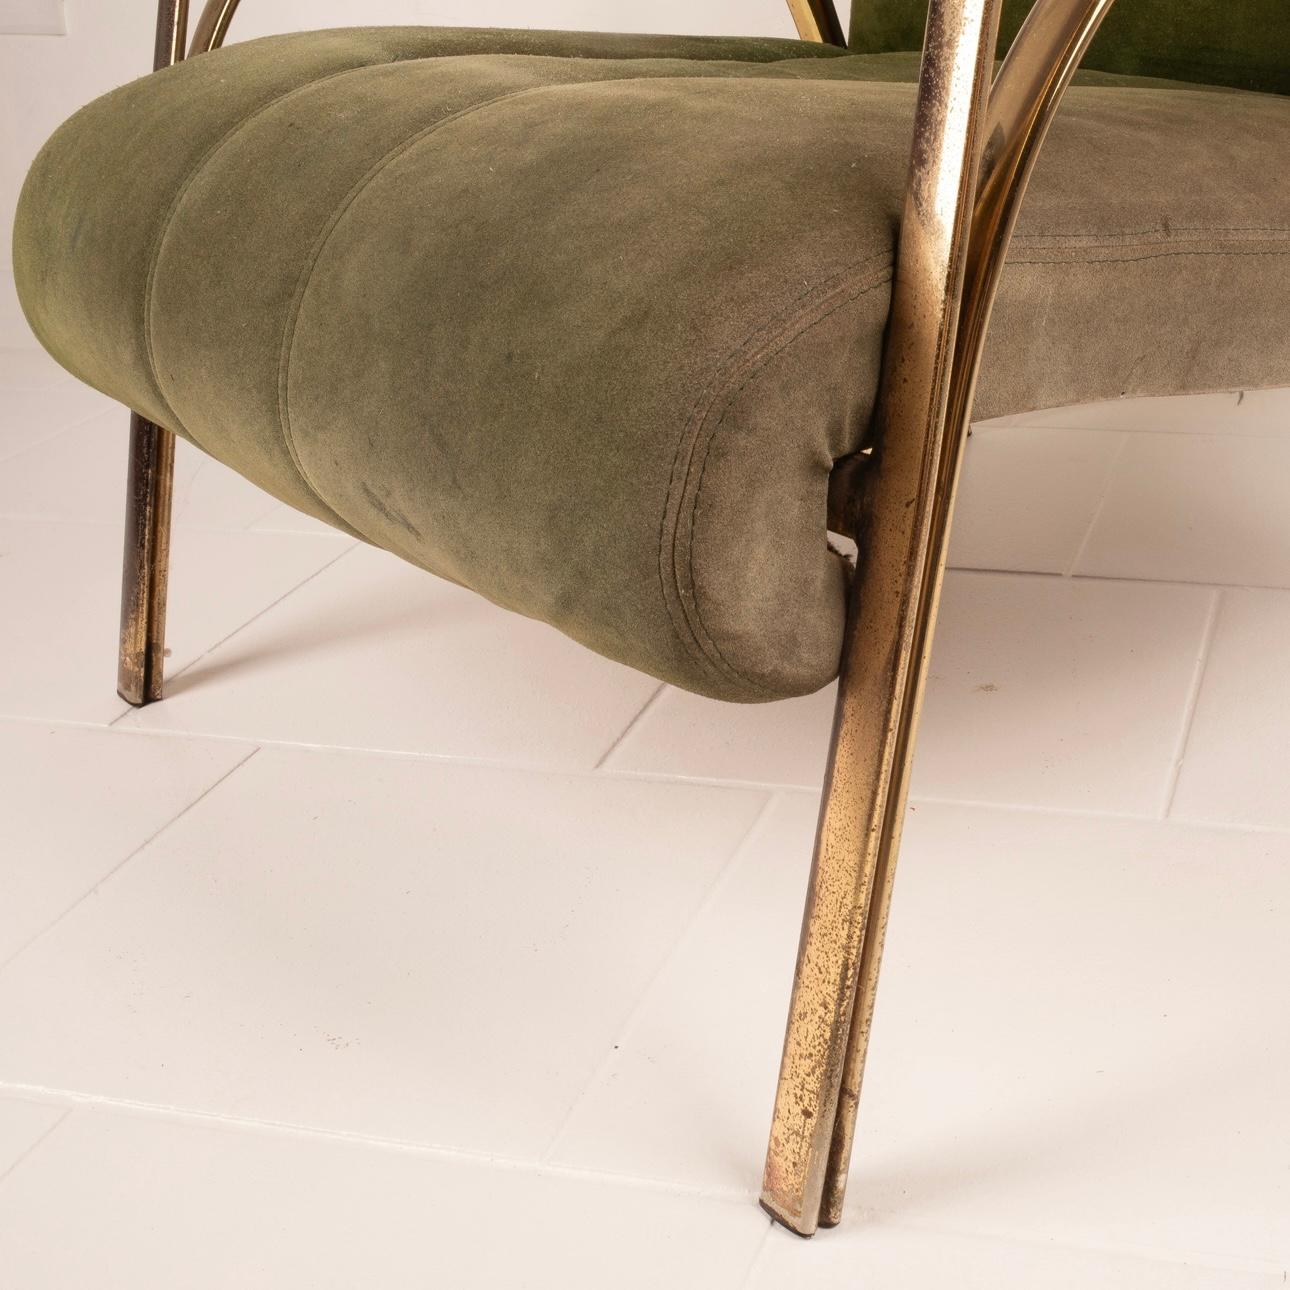 Entdecken Sie mit unserem eleganten Sessel im Hollywood-Regency-Stil der 1960er Jahre des renommierten Designers Vittorio Gregotti ein authentisches Schmuckstück im Vintage-Design.
Dieser Sessel aus feinem grünem Wildleder und mit raffinierten,